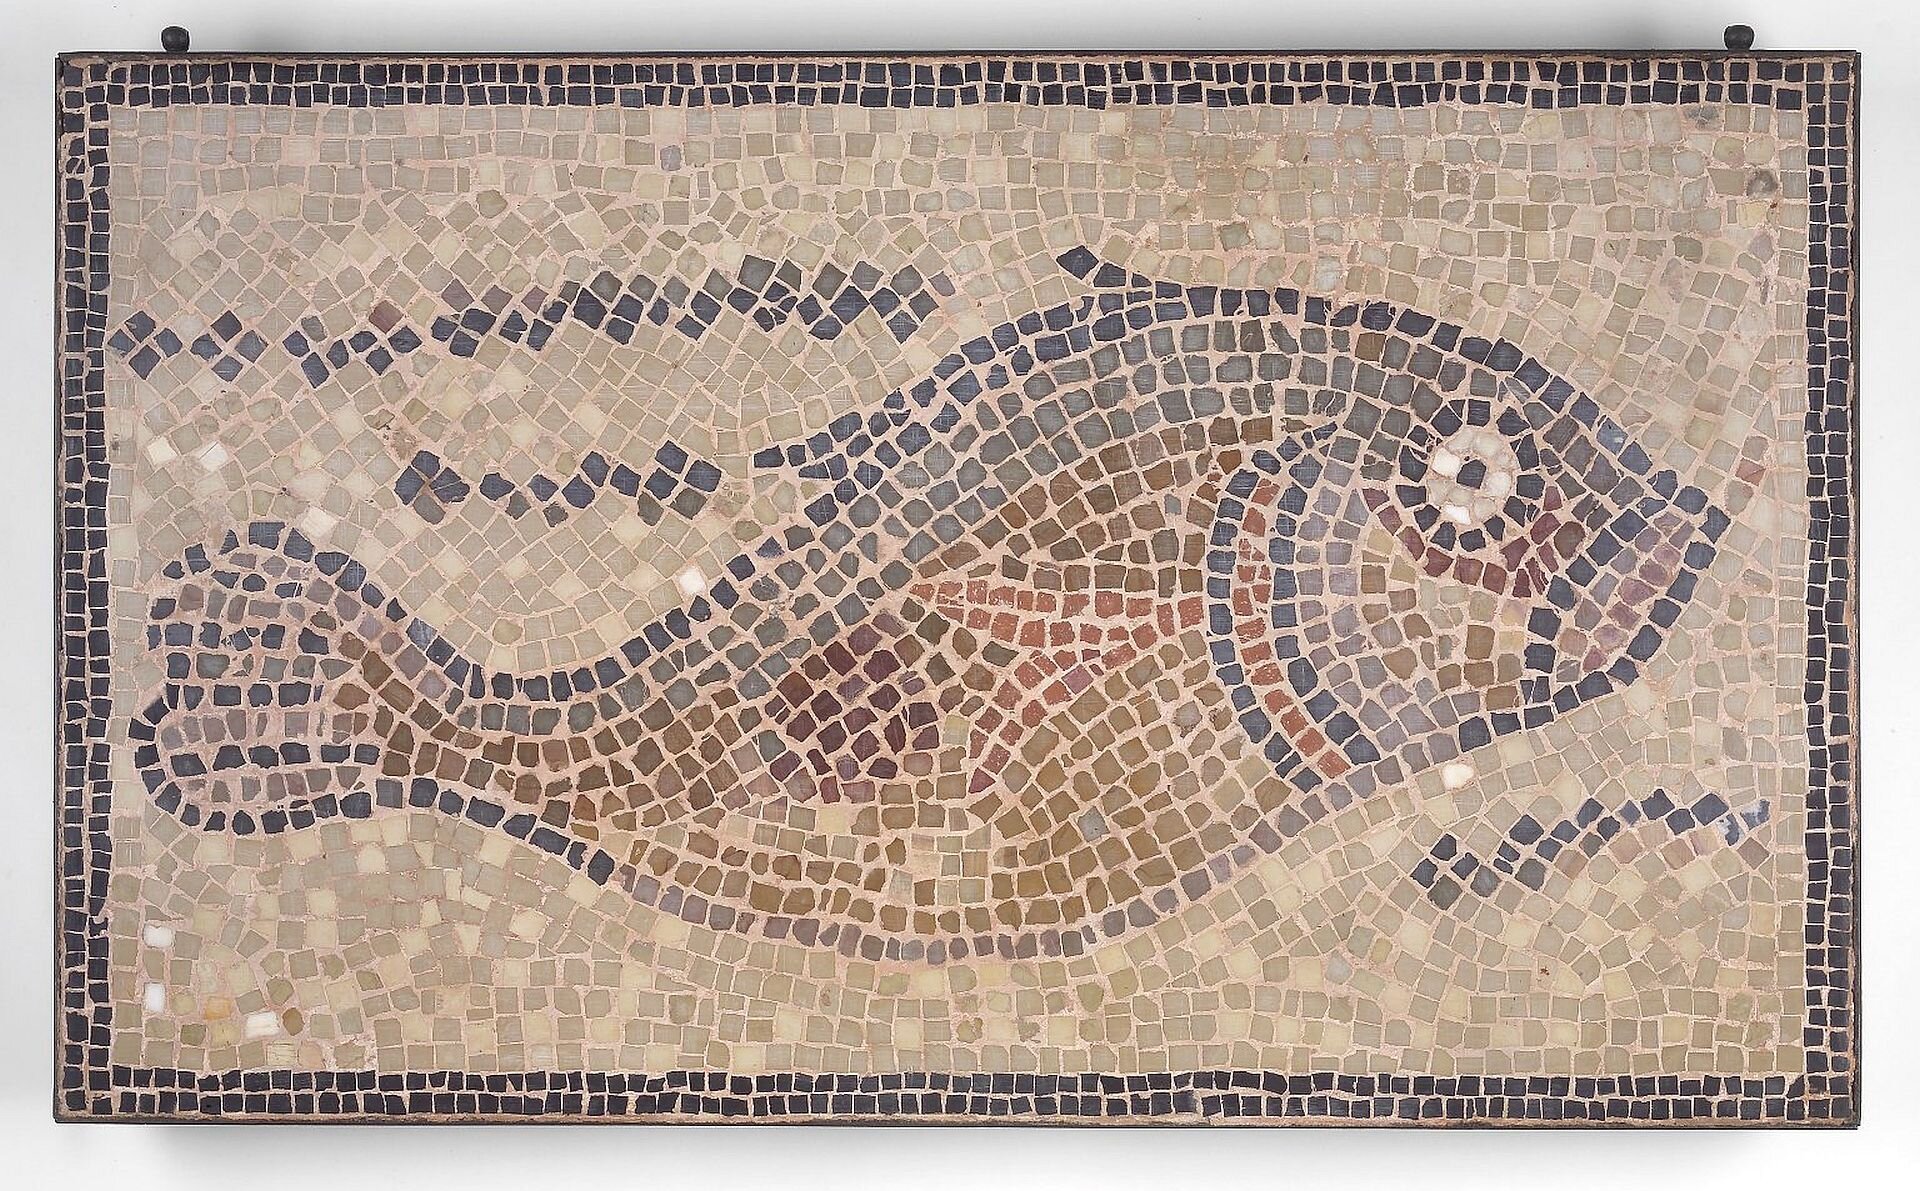 
Ilustracja to mozaika przedstawiająca rybę, pochodzi z VI w. n.e., obecnie w Brooklyn Museum w Nowym Yorku. Ryba jest w kolorze brązowo-czarnym. Kompozycję otacza ramka w kolorze ciemnobrązowym.